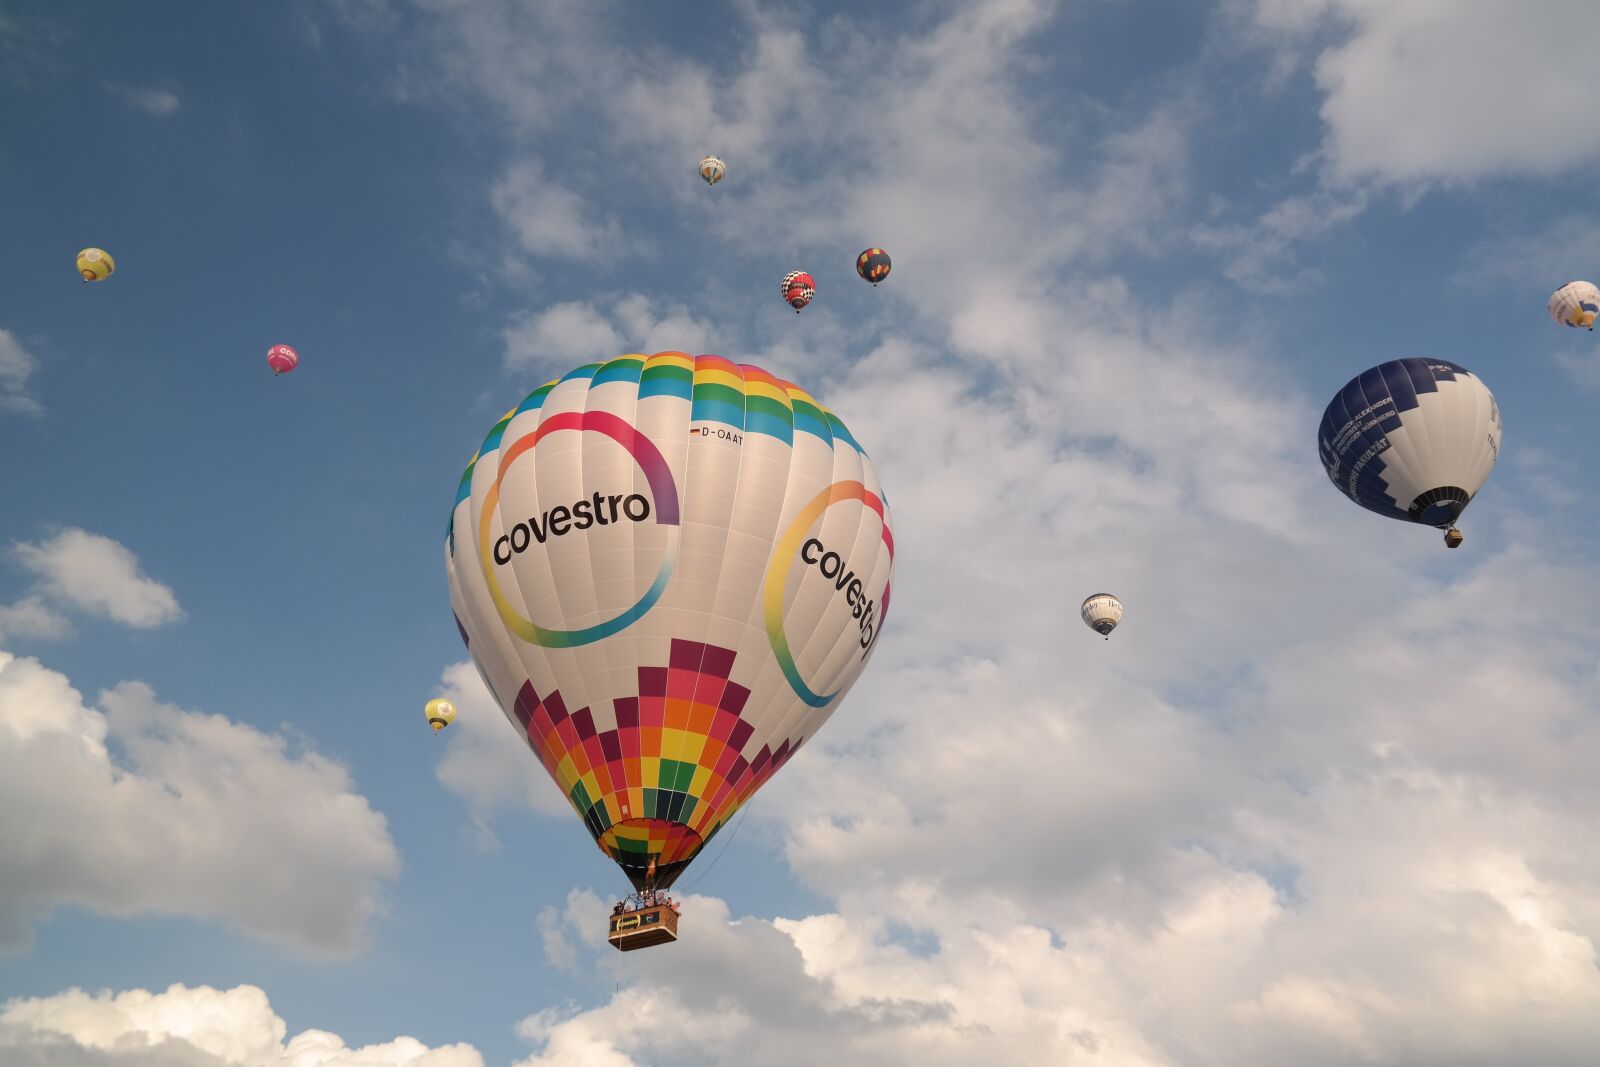 Samsung NX300 sample photo. Ballons, hot air balloons photography